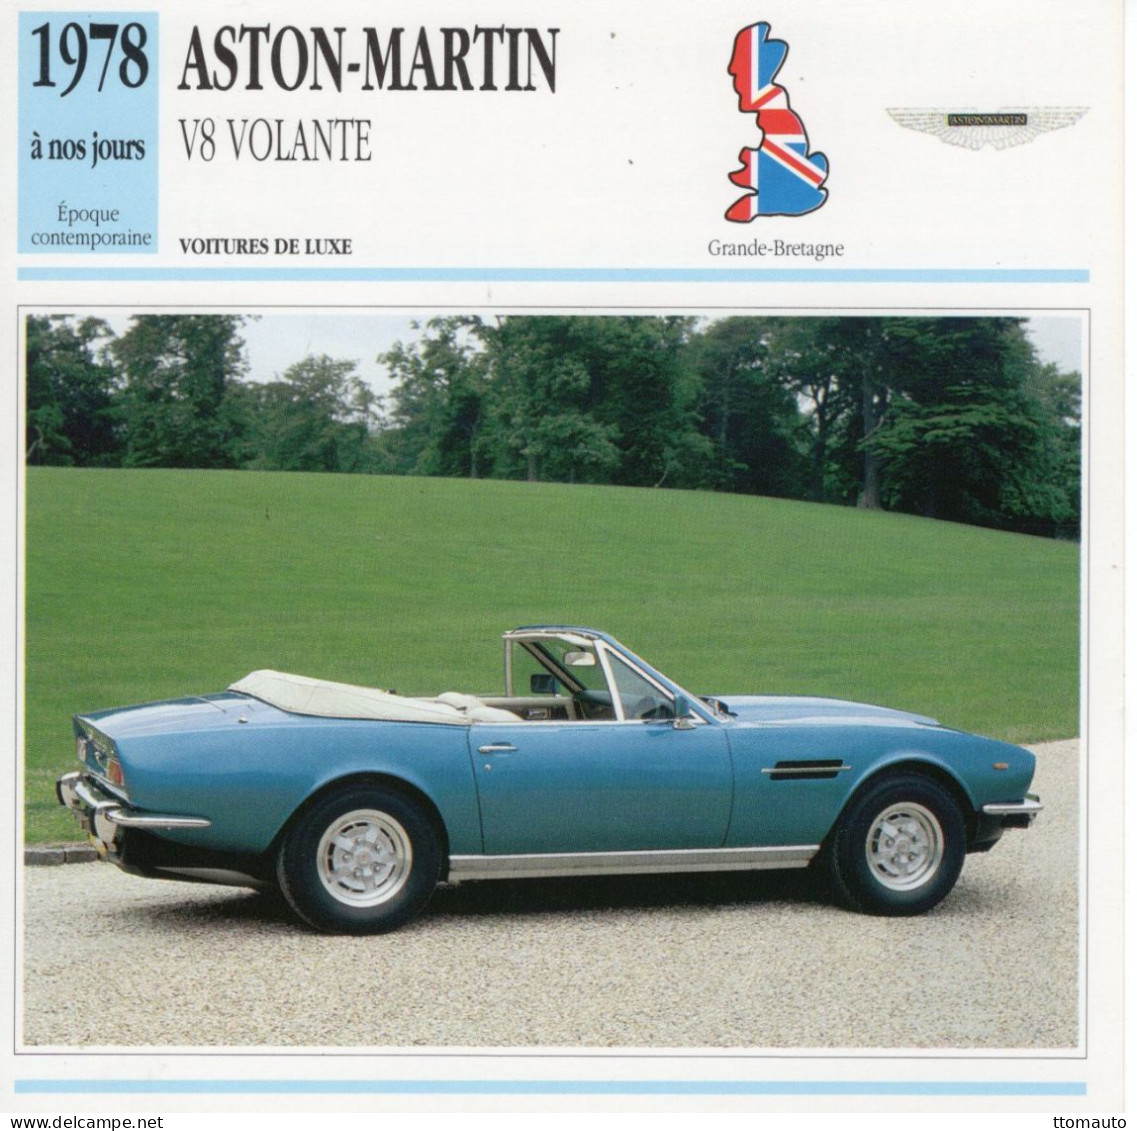 Aston-Martin Volante V8 Cabriolet  -  1978  - Voiture De Luxe -  Fiche Technique Automobile (GB) - Voitures